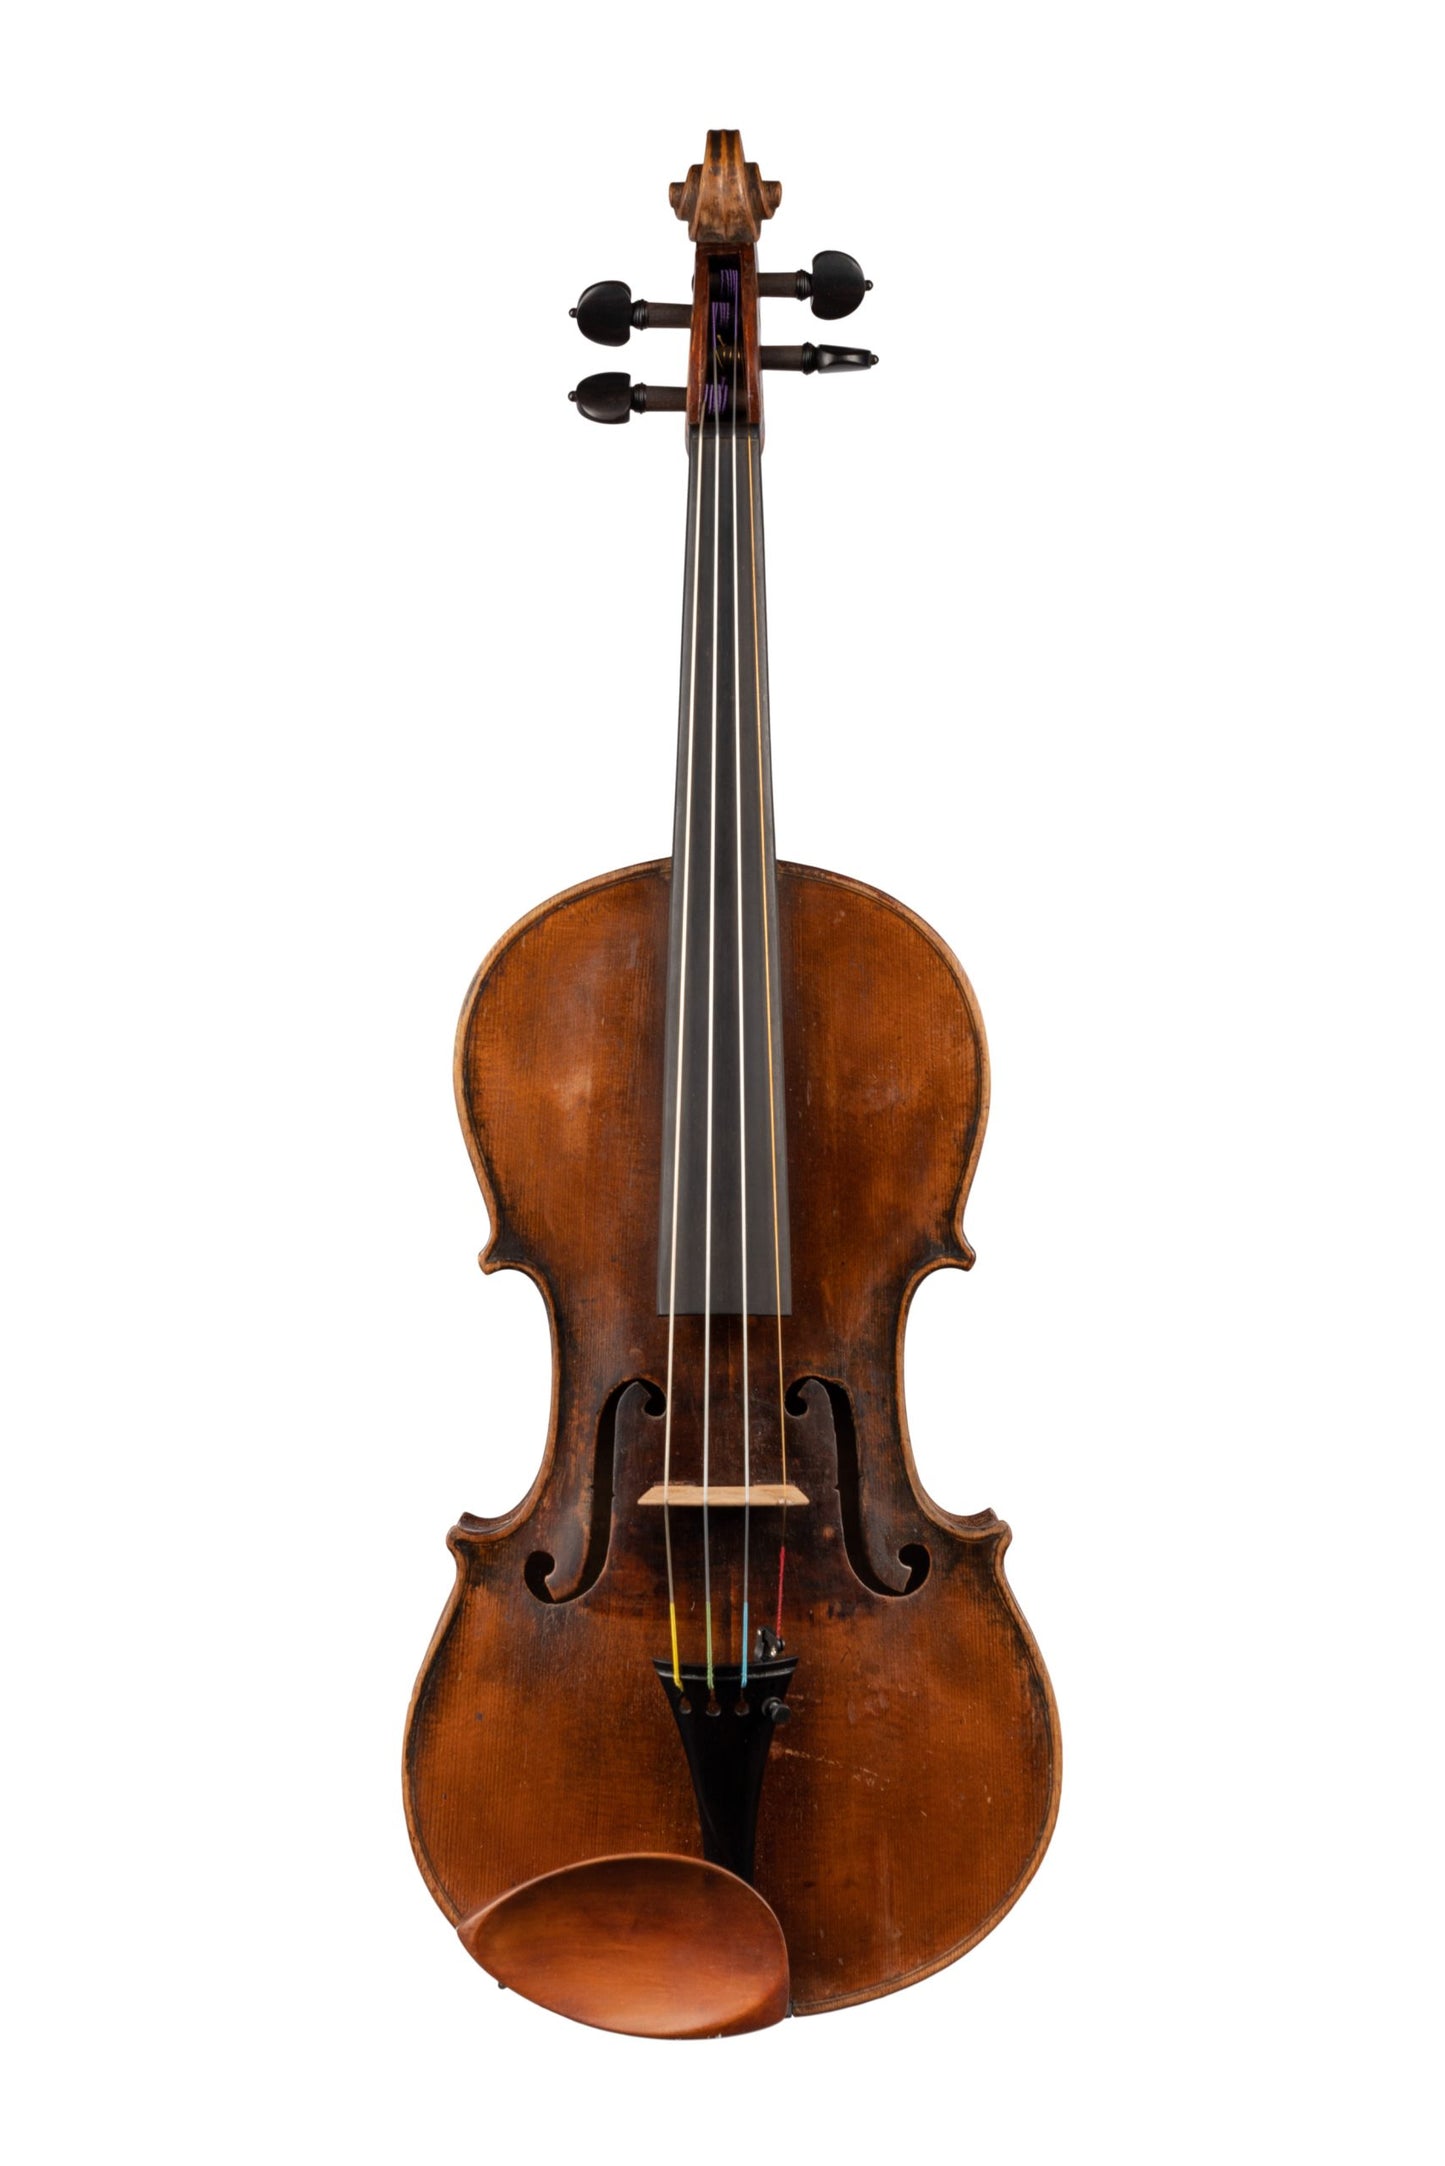 German Violin by German Workshop, GE-176